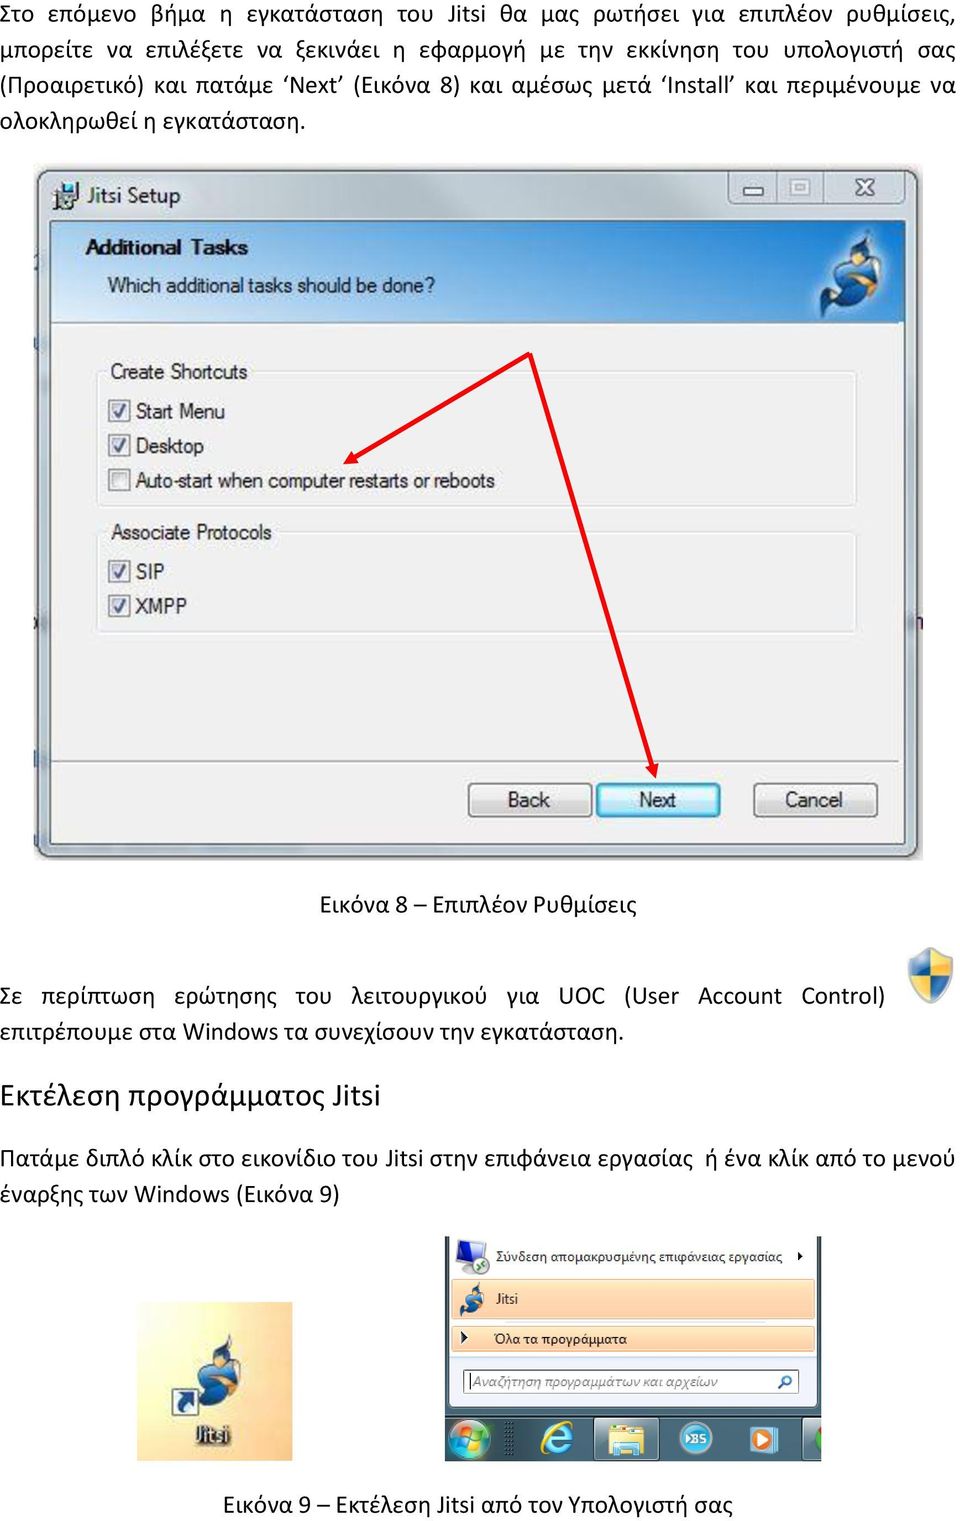 Εικόνα 8 Επιπλέον Ρυθμίσεις Σε περίπτωση ερώτησης του λειτουργικού για UOC (User Account Control) επιτρέπουμε στα Windows τα συνεχίσουν την εγκατάσταση.